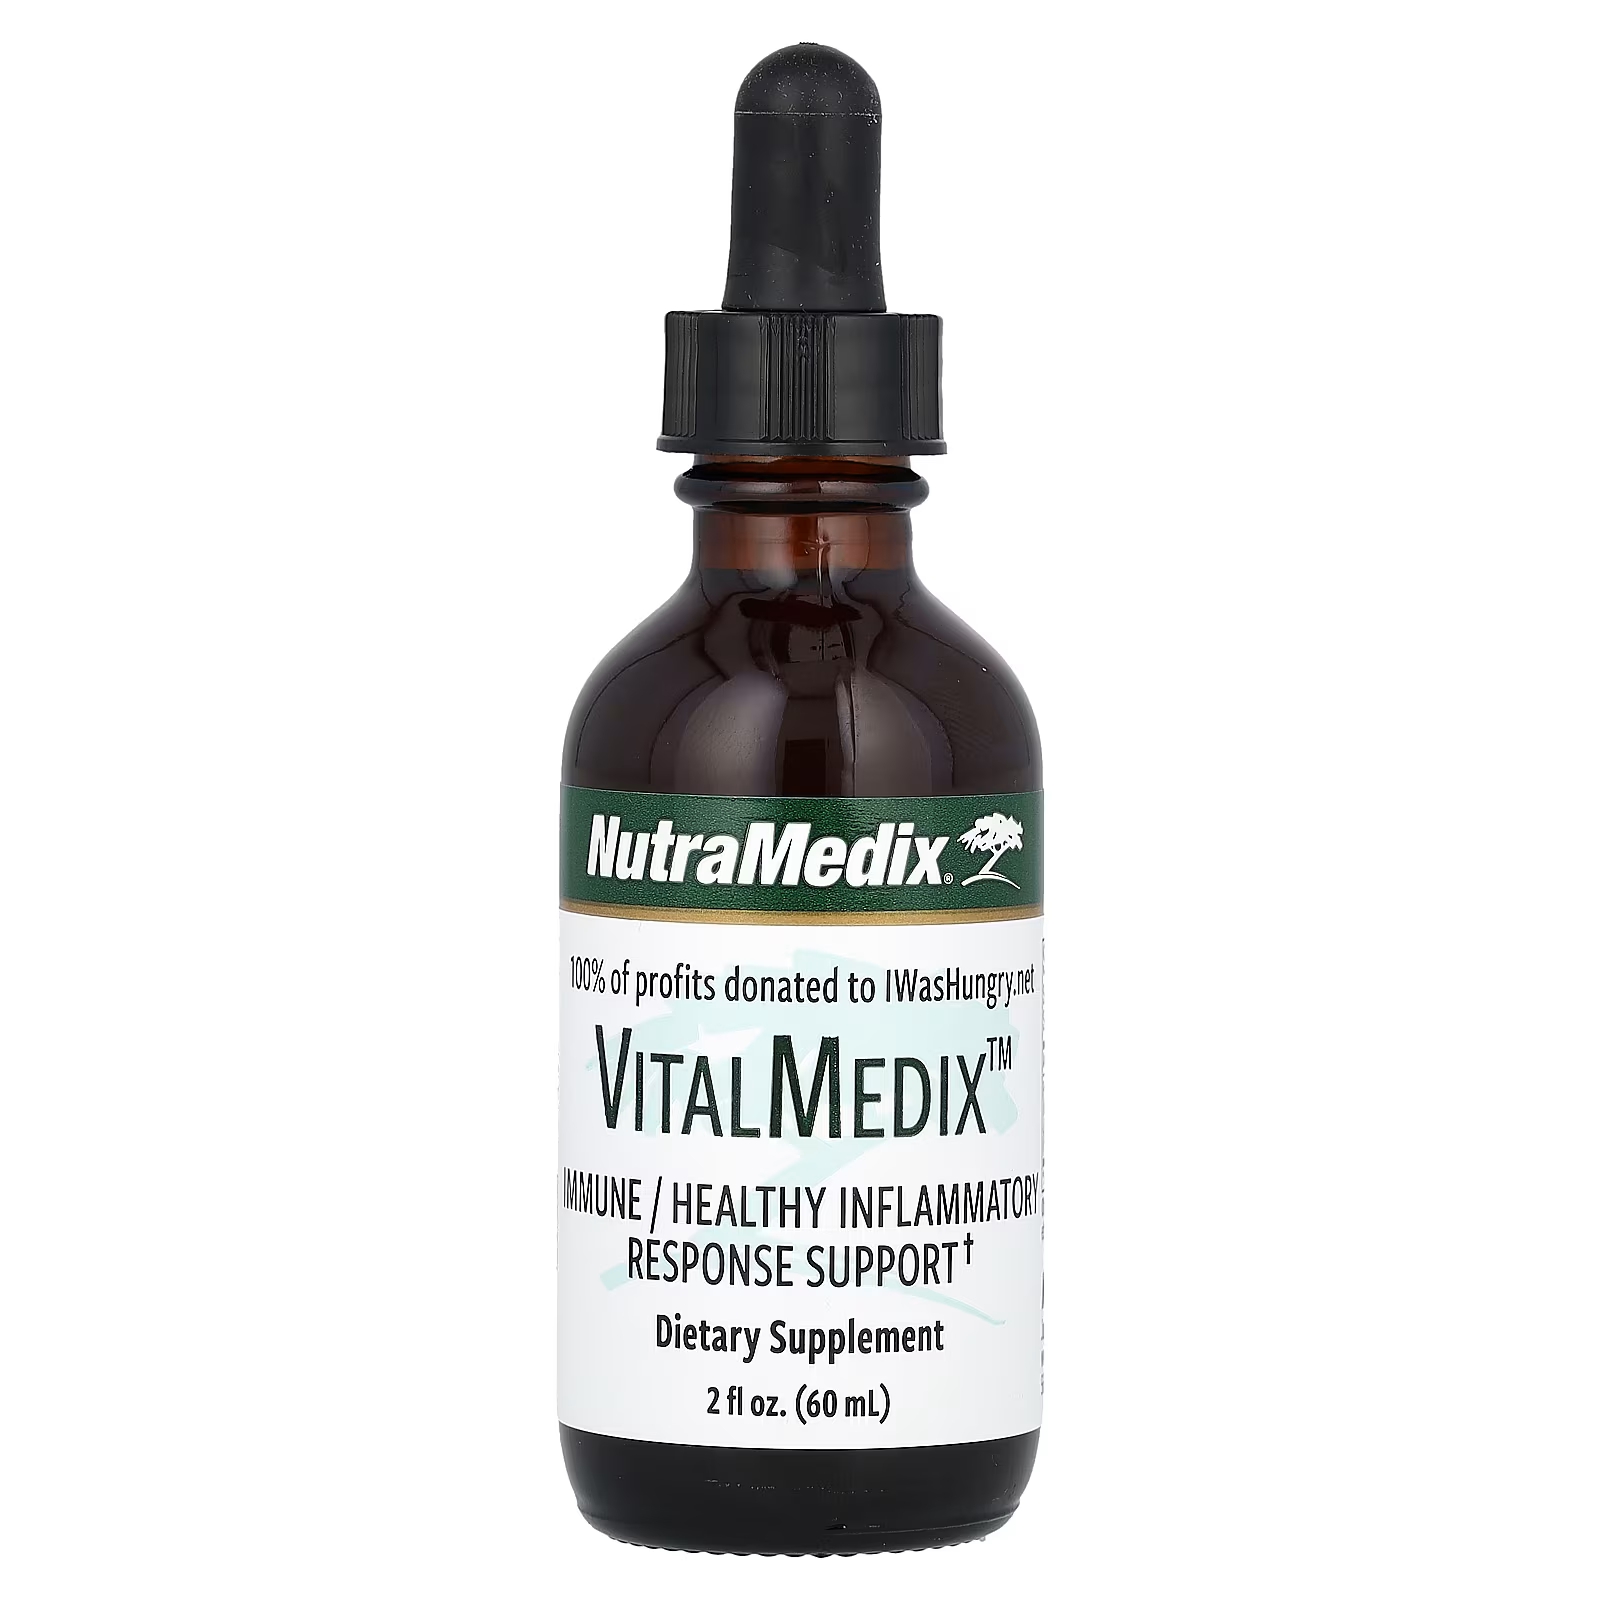 Пищевая добавка для поддержки иммунной системы NutraMedix VitalMedix, 60 мл aura herbals żurawina 800 mg witamina c капсулы для поддержки иммунной системы 60 шт